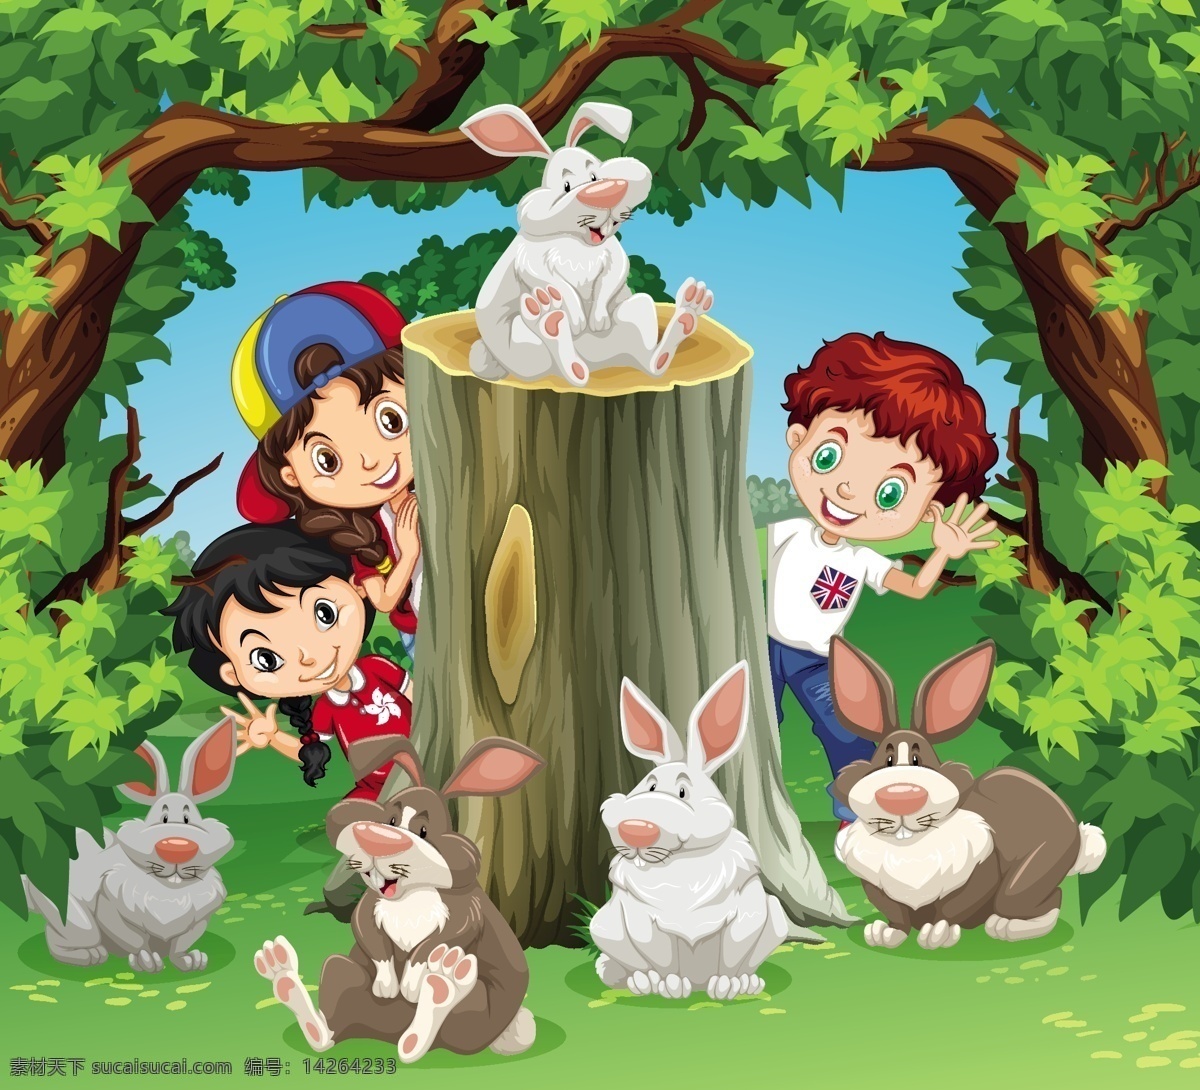 卡通兔图片 卡通兔 兔子 卡通 插画 漫画 动物 可爱 兔子素材 复活节 兔 儿童 学生 卡通动物生物 卡通设计